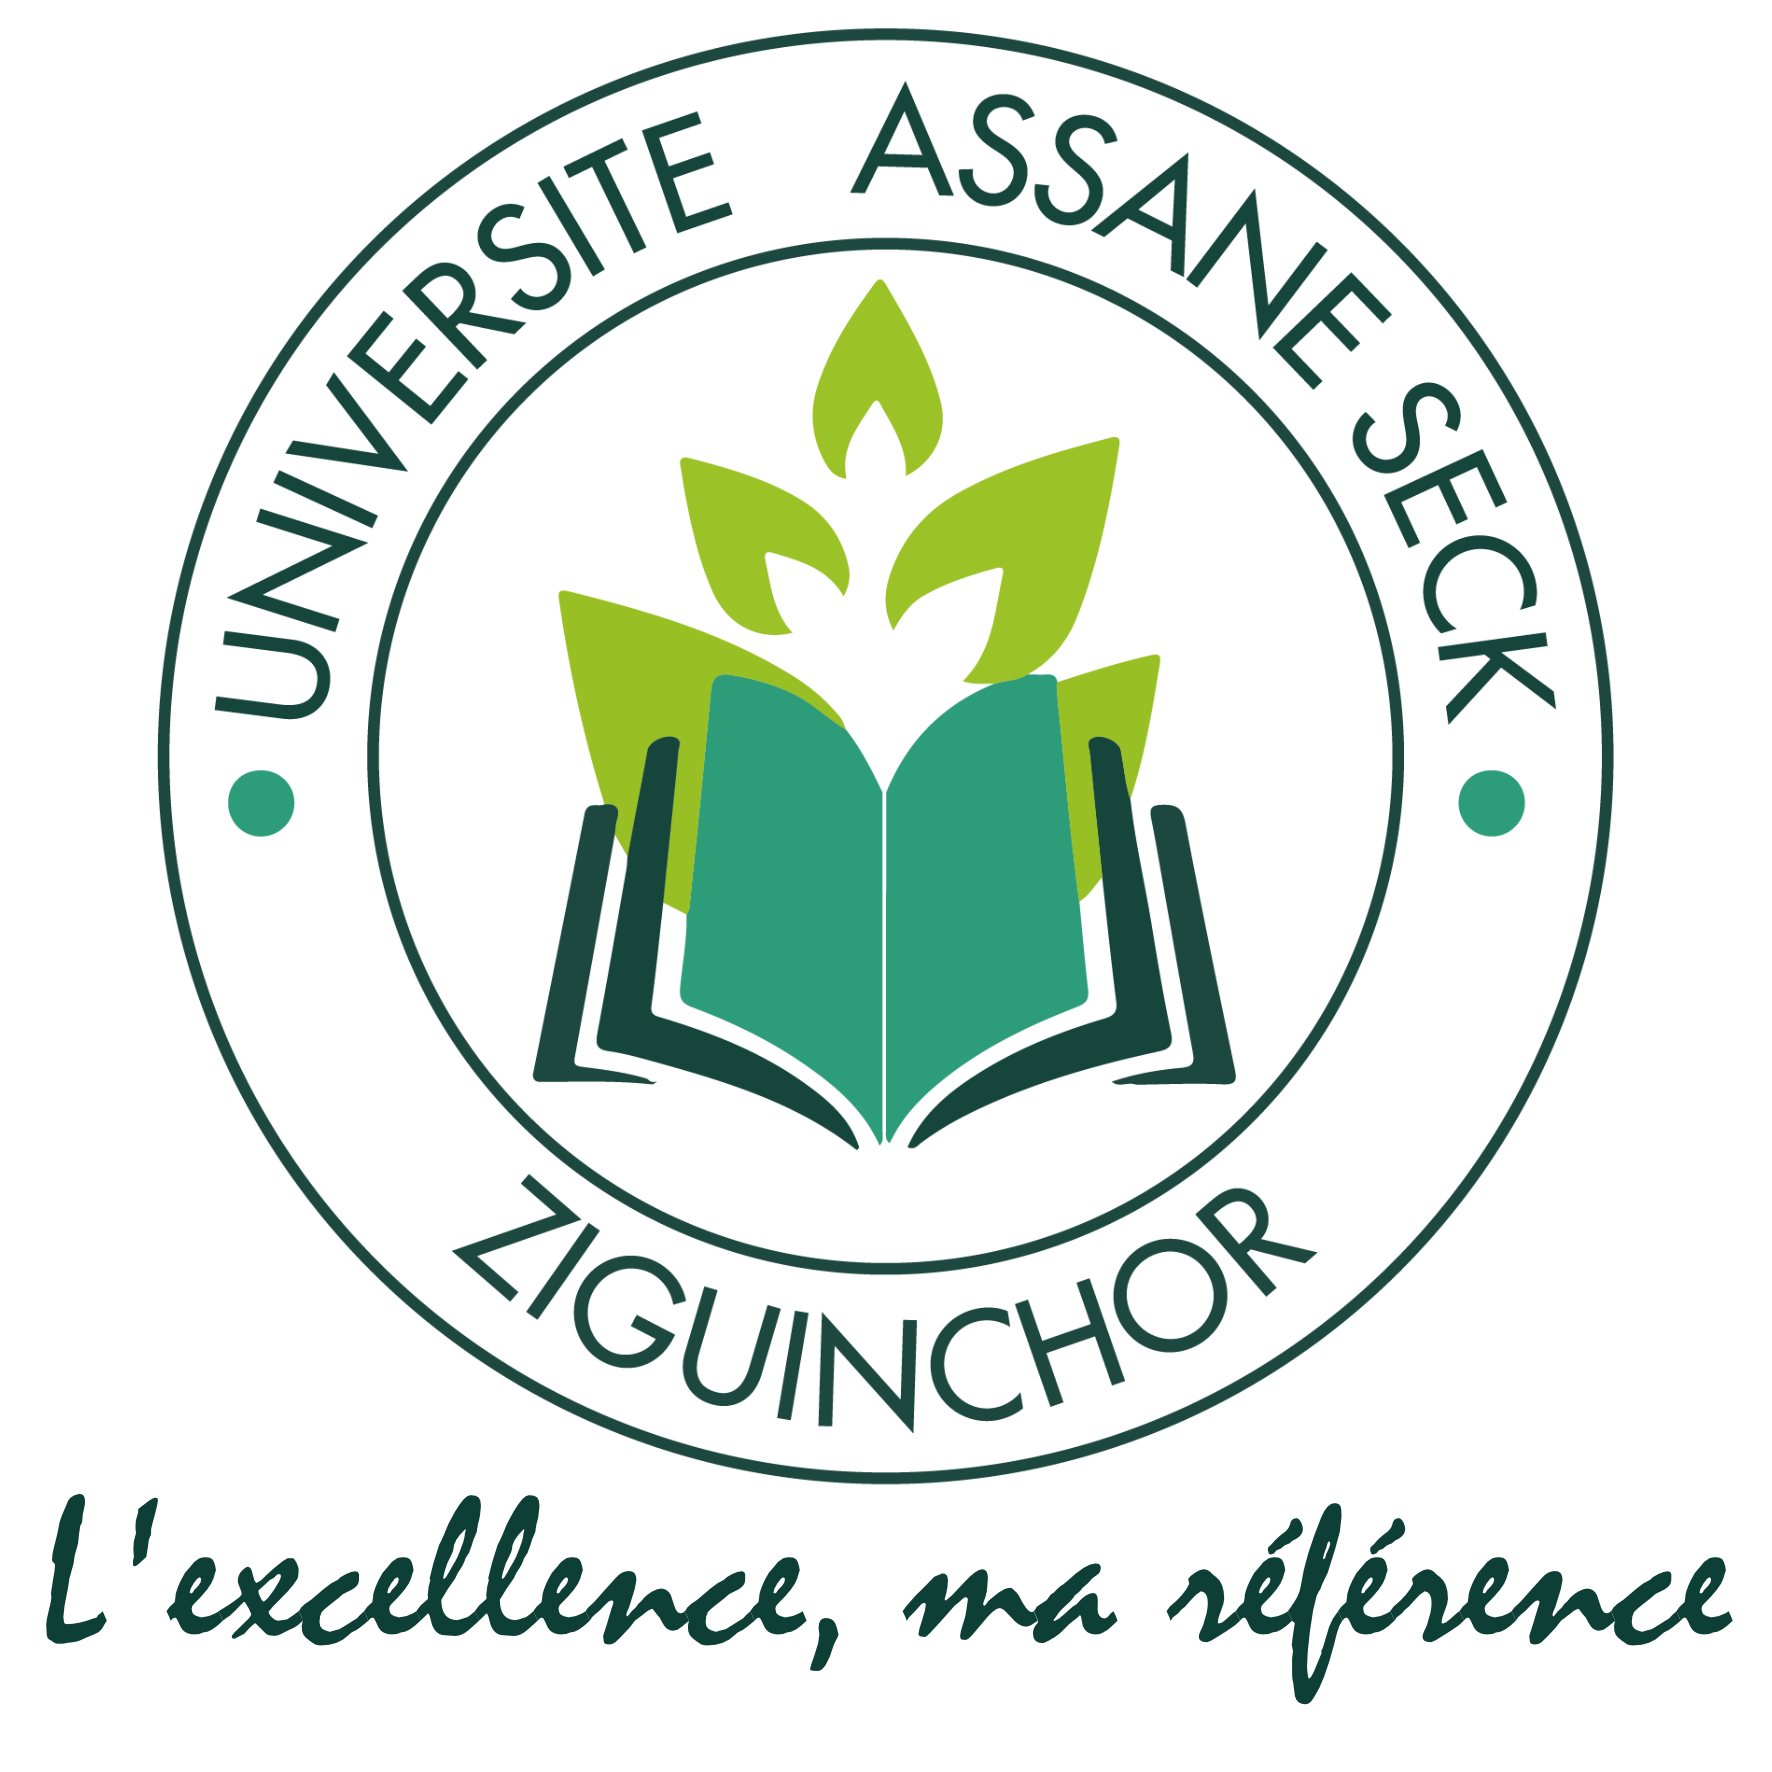 L’OIF sollicite des experts pour élaborer un Guide francophone des négociations en gouvernance du numérique | Université Assane Seck de Ziguinchor